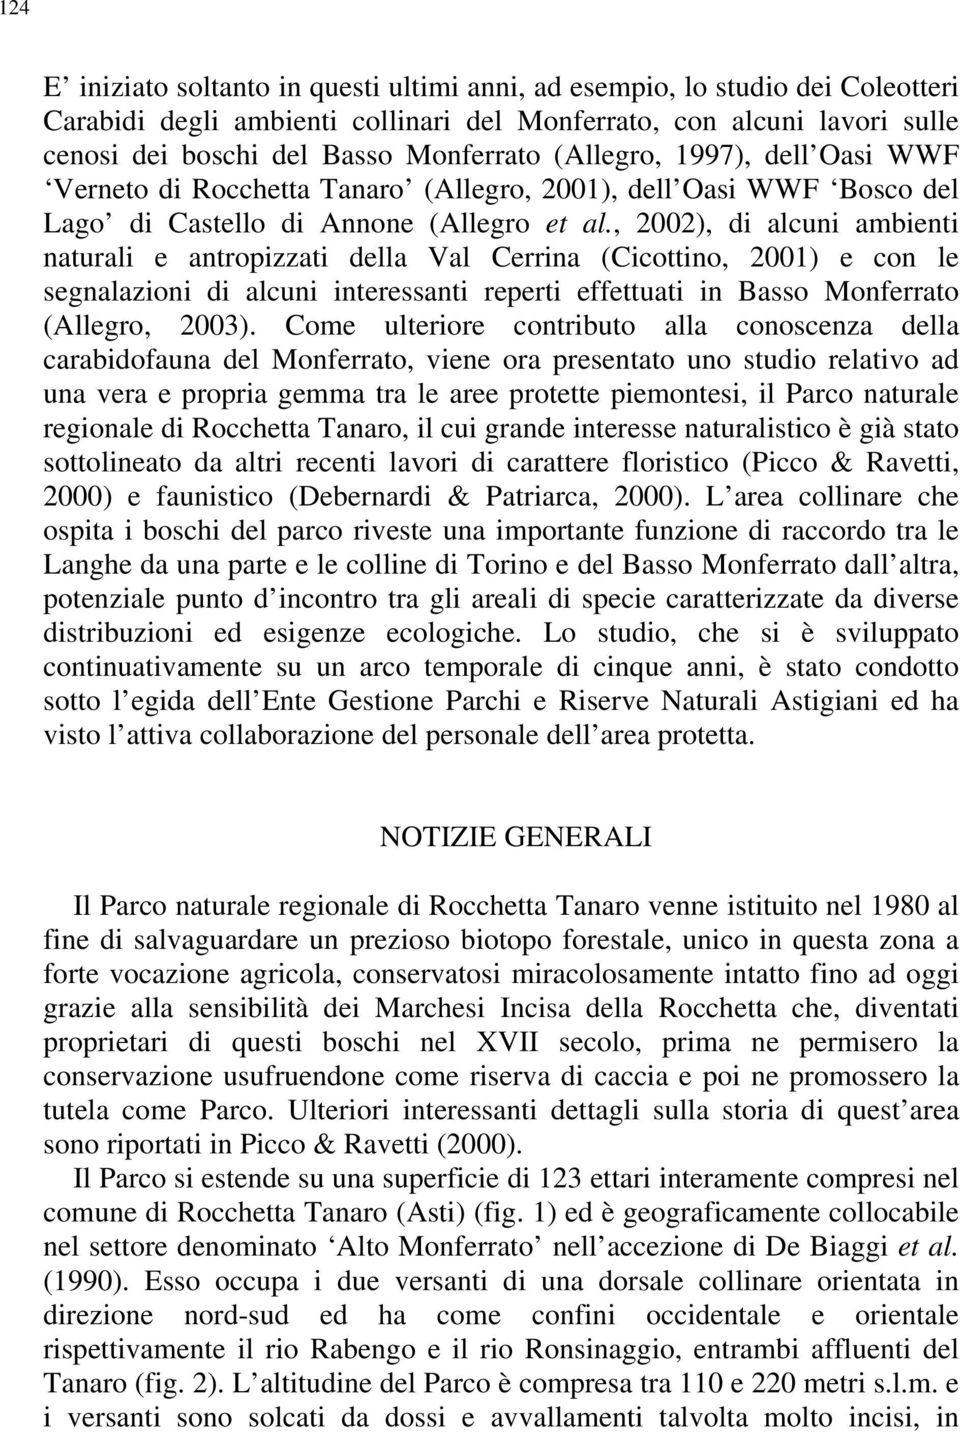 , 2002), di alcuni ambienti naturali e antropizzati della Val Cerrina (Cicottino, 2001) e con le segnalazioni di alcuni interessanti reperti effettuati in Basso Monferrato (Allegro, 2003).